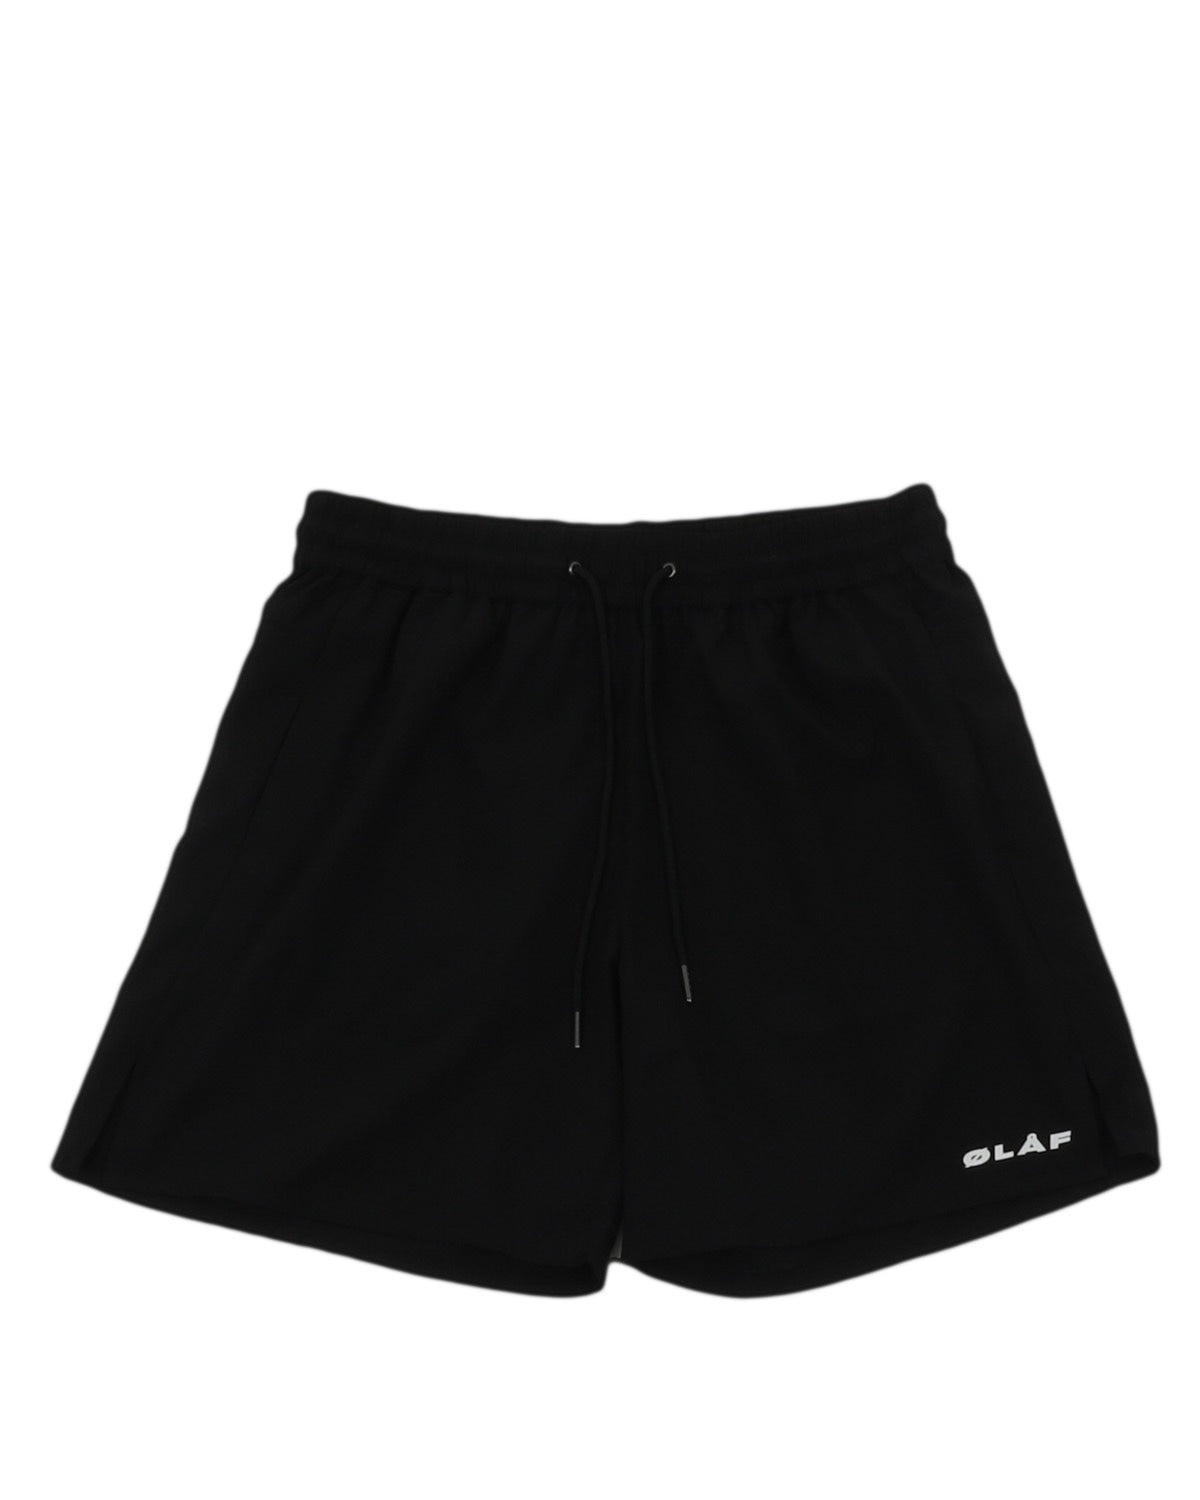 olaf_olaf track shorts_black_1_2